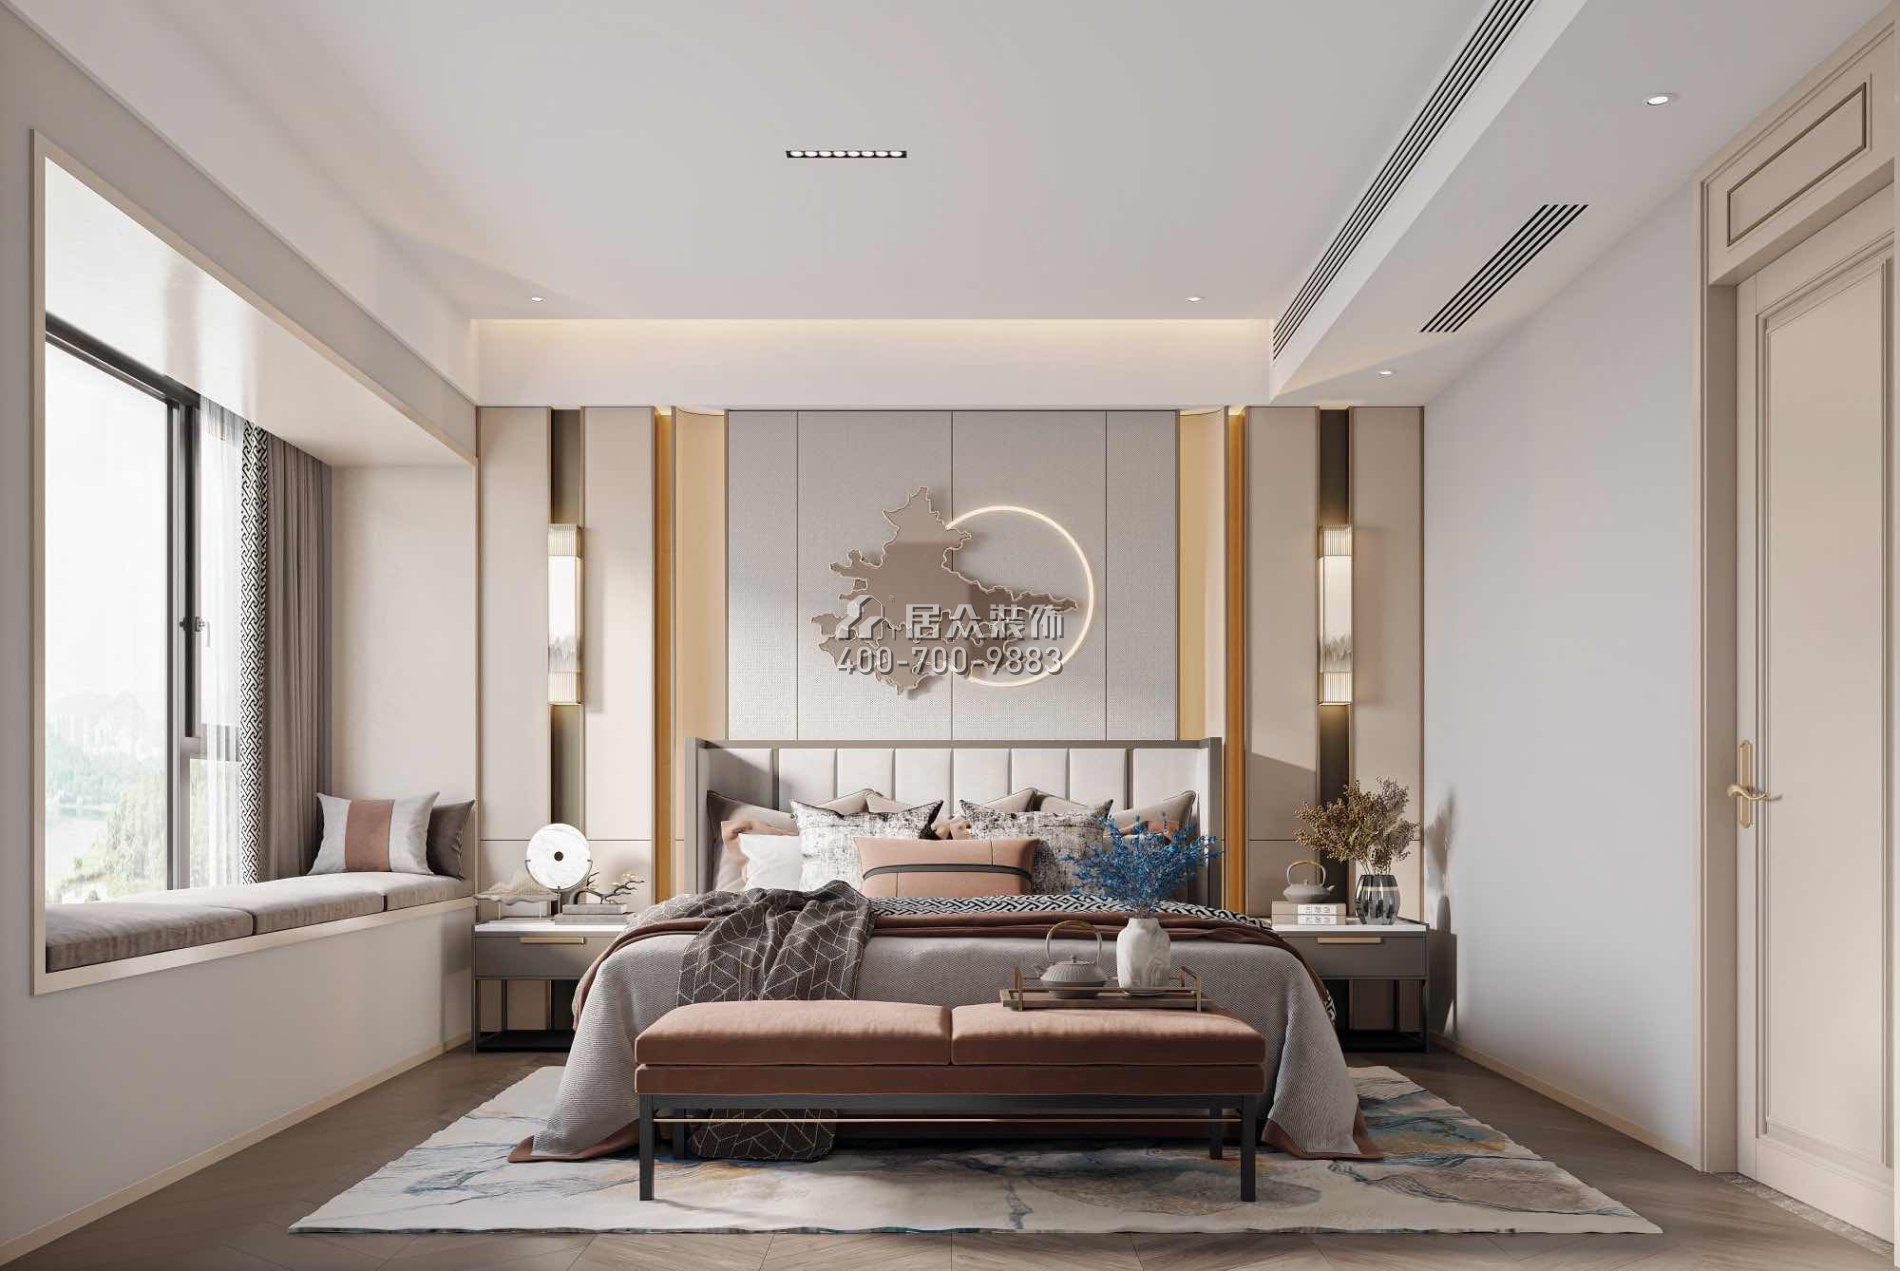 恒裕水墨兰亭350平方米中式风格复式户型卧室kok电竞平台效果图